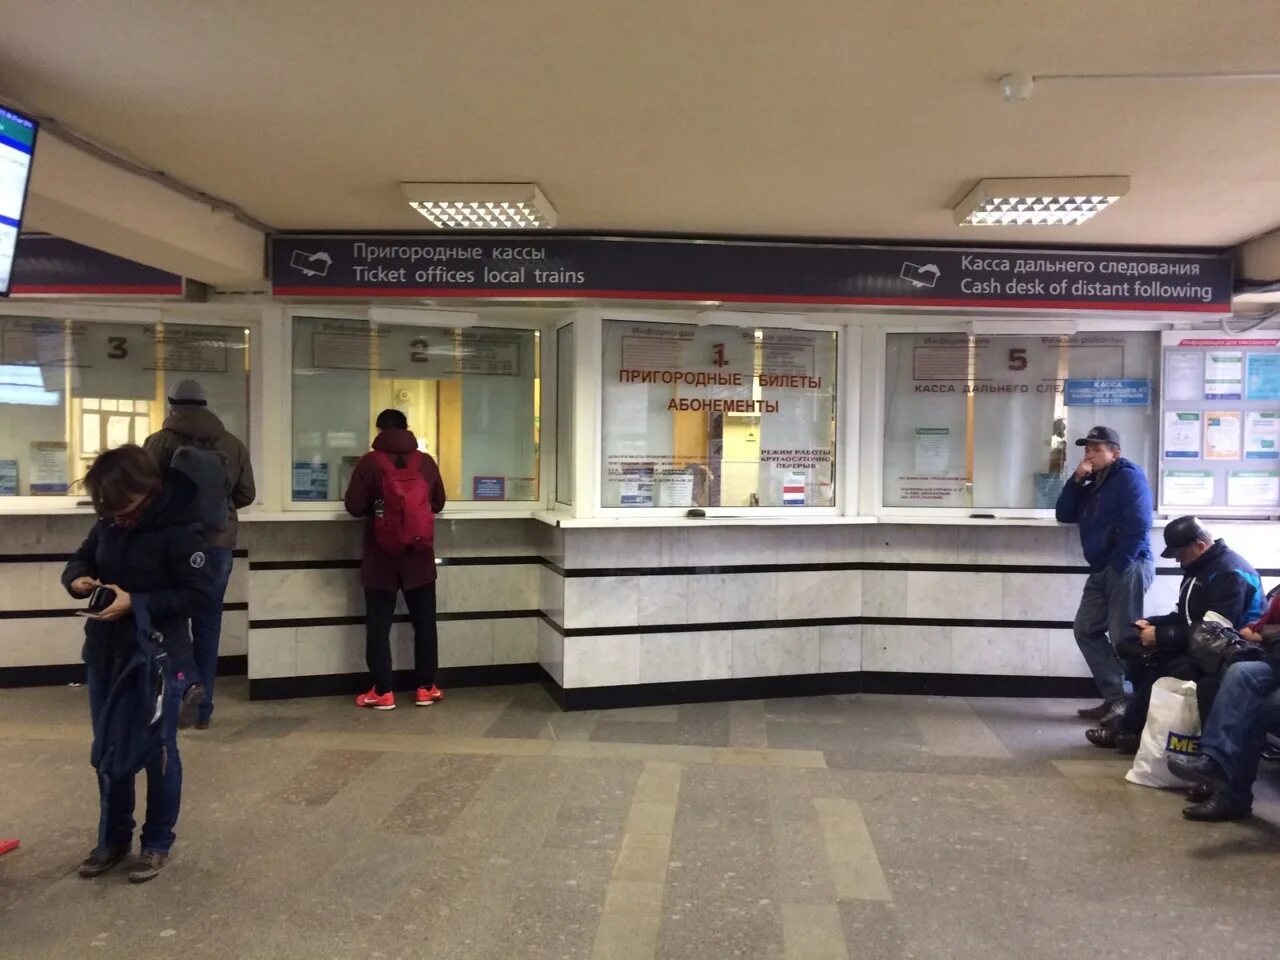 Адреса билетных касс. Пригородные кассы ЖД вокзала Новосибирск. Кассы железнодорожных билетов. Касса на вокзале. Билетная касса ЖД.